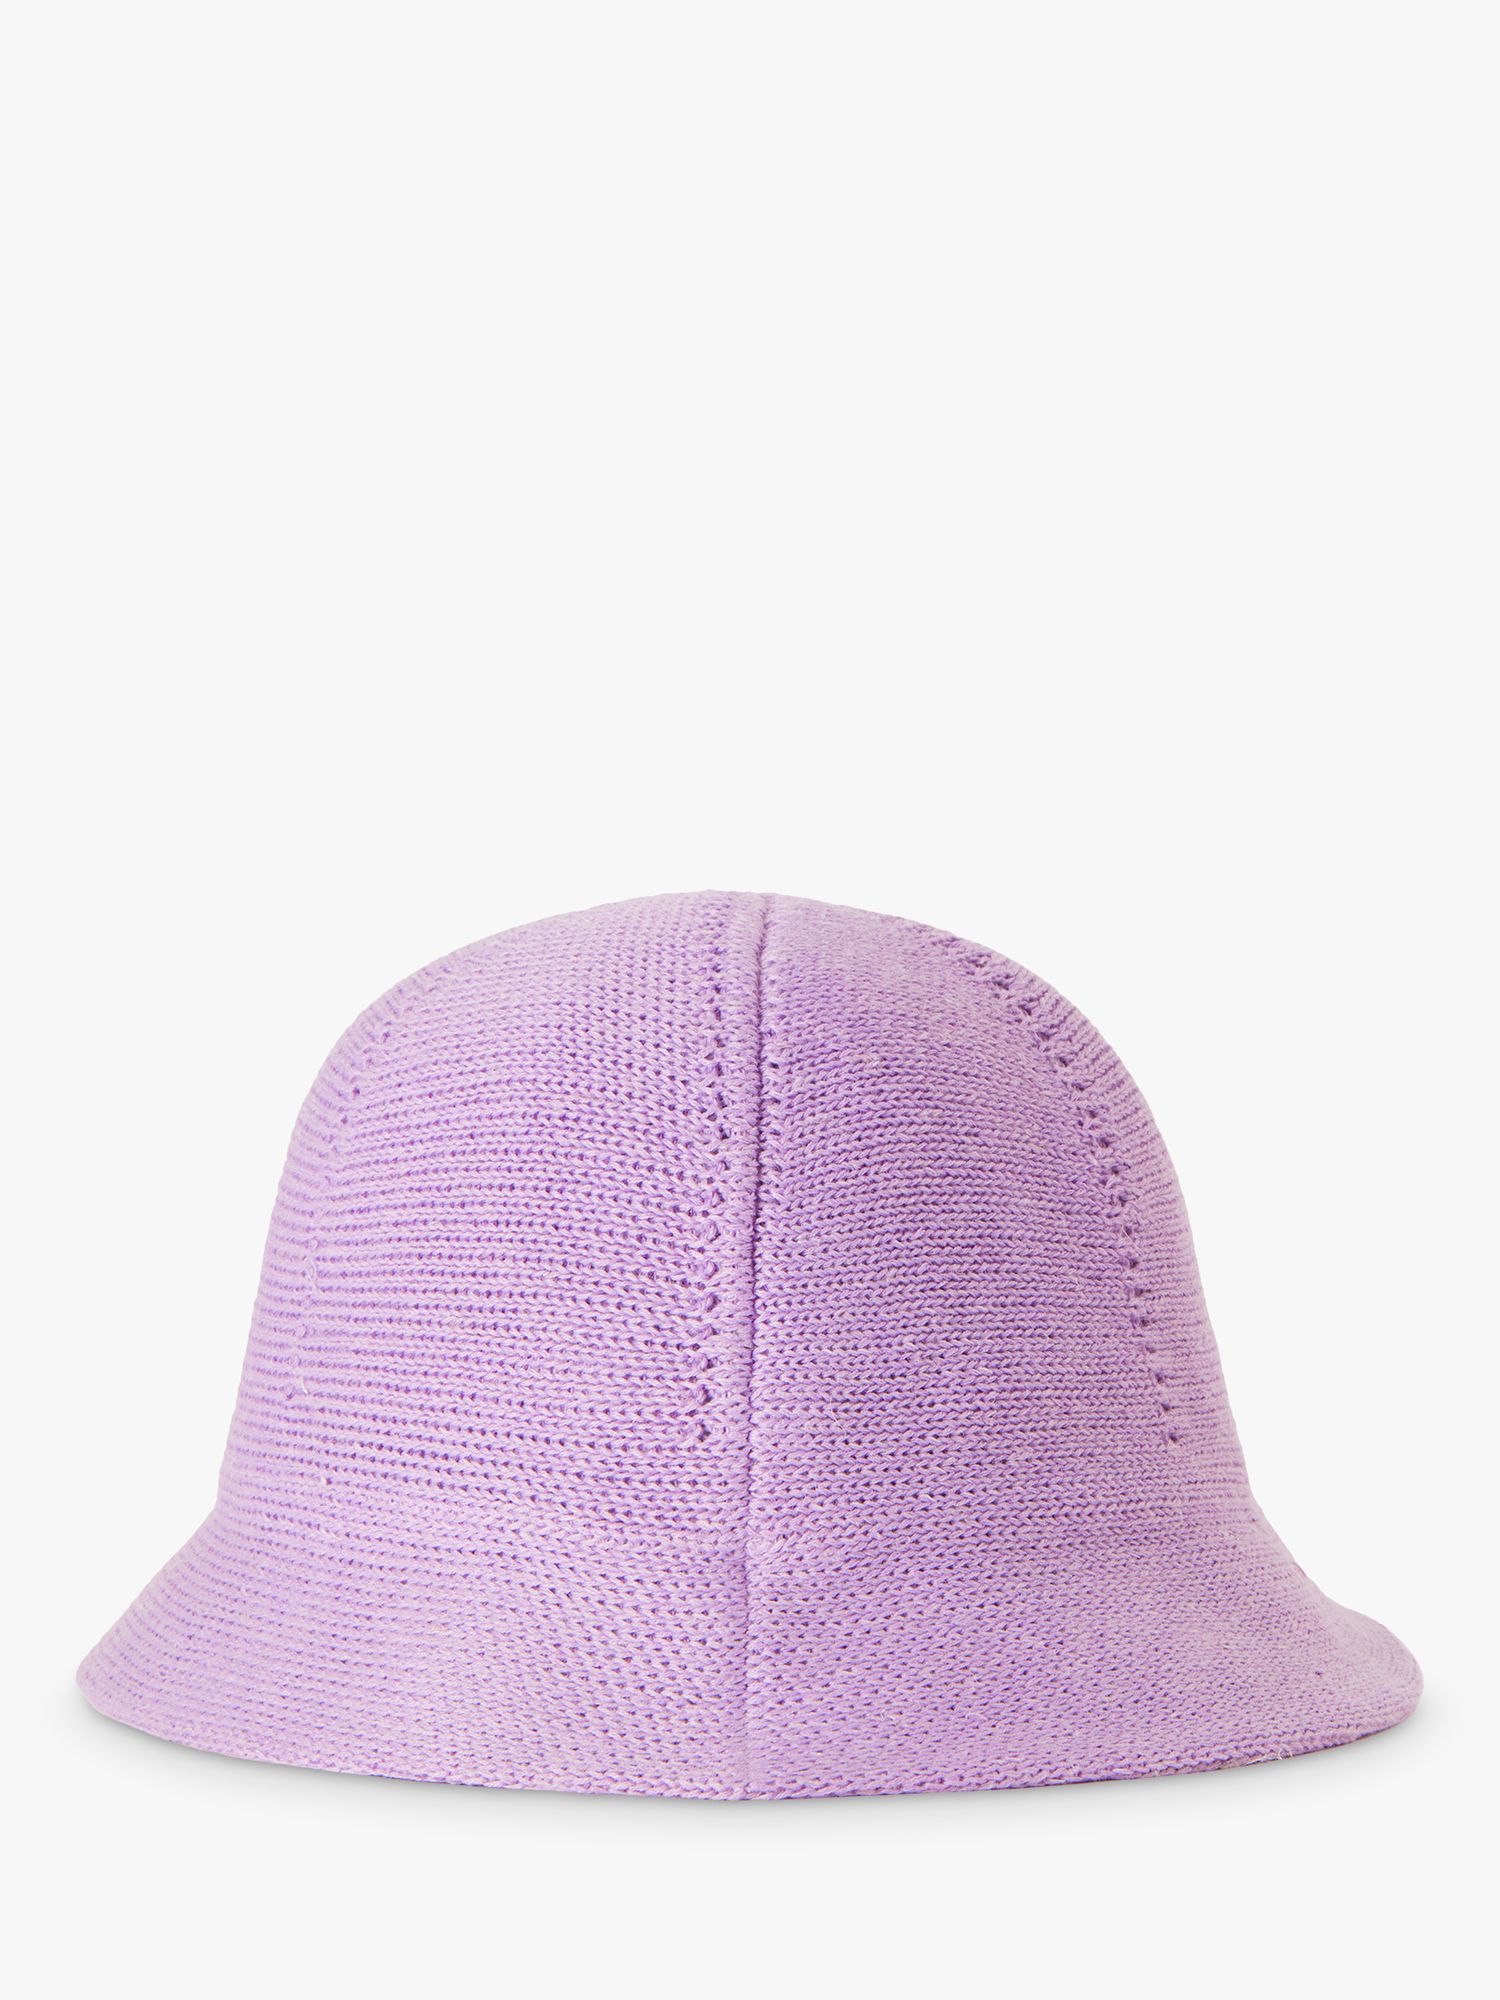 Benetton Kids' Knit Cloche Hat, Mauve, S